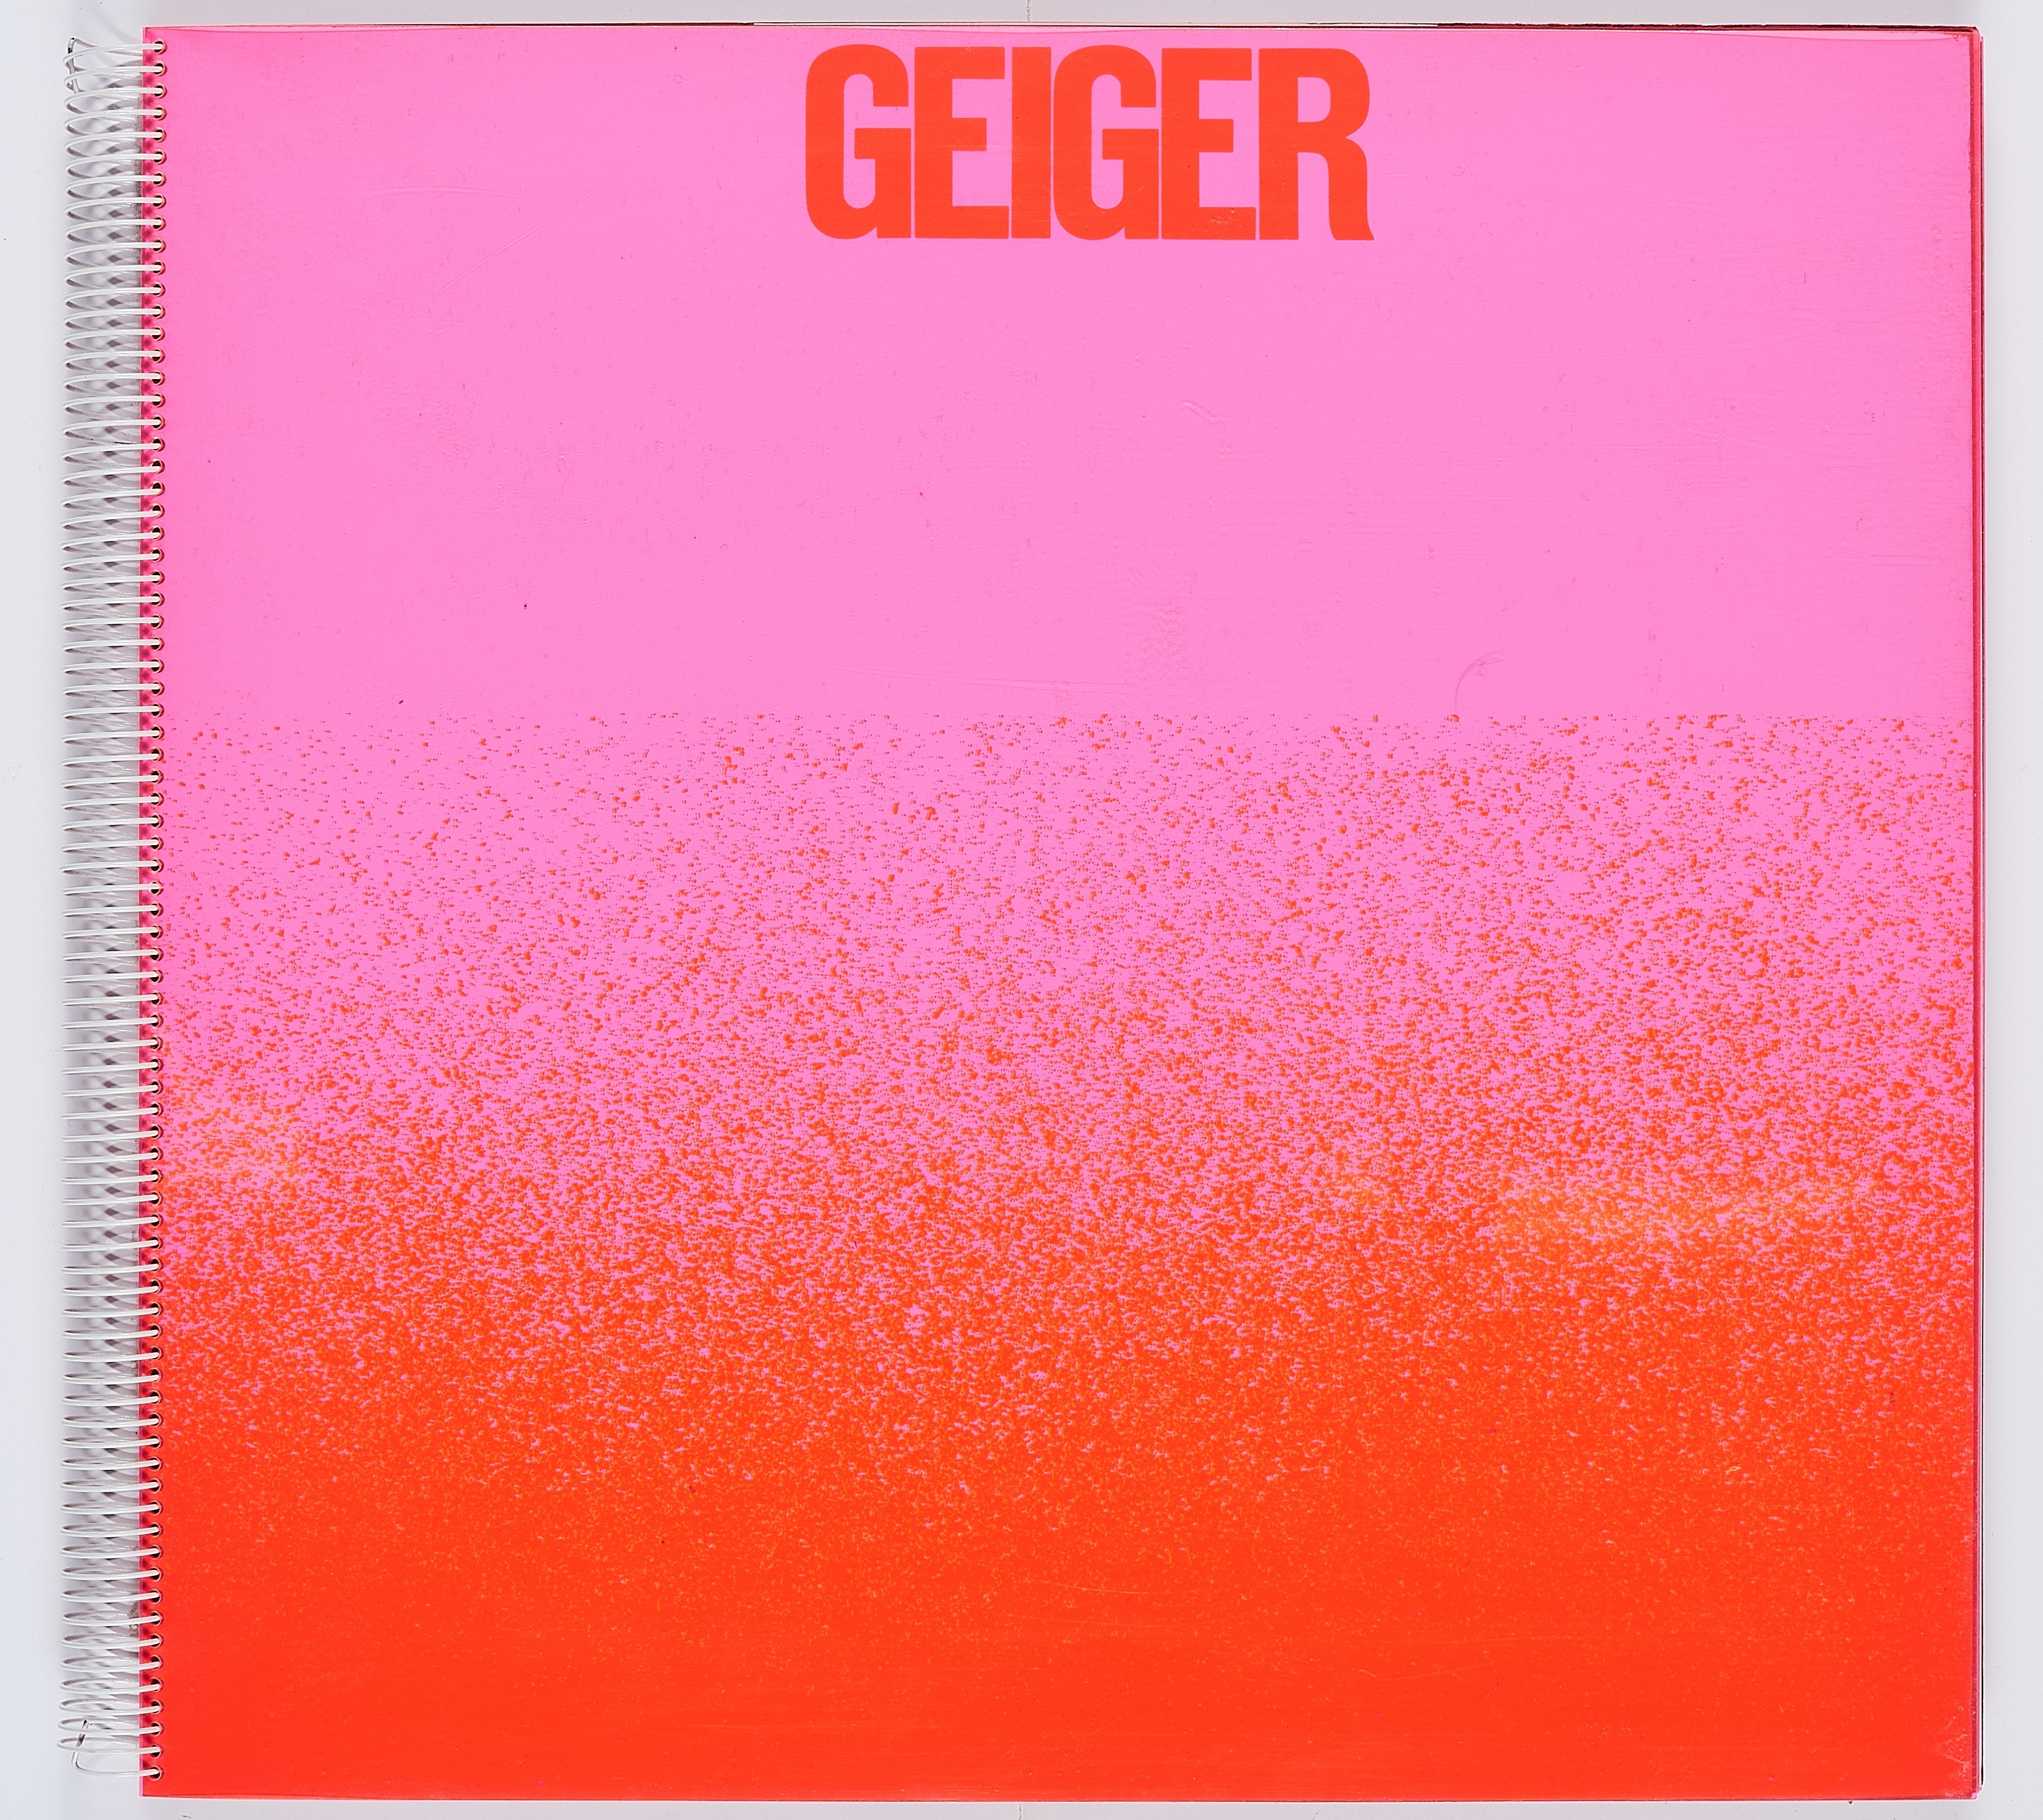 Rupprecht Geiger - all die roten farben, was da alles rot ist, ein sehr rotes buch/ Hundertbuch III by Rupprecht Geiger, circa 39